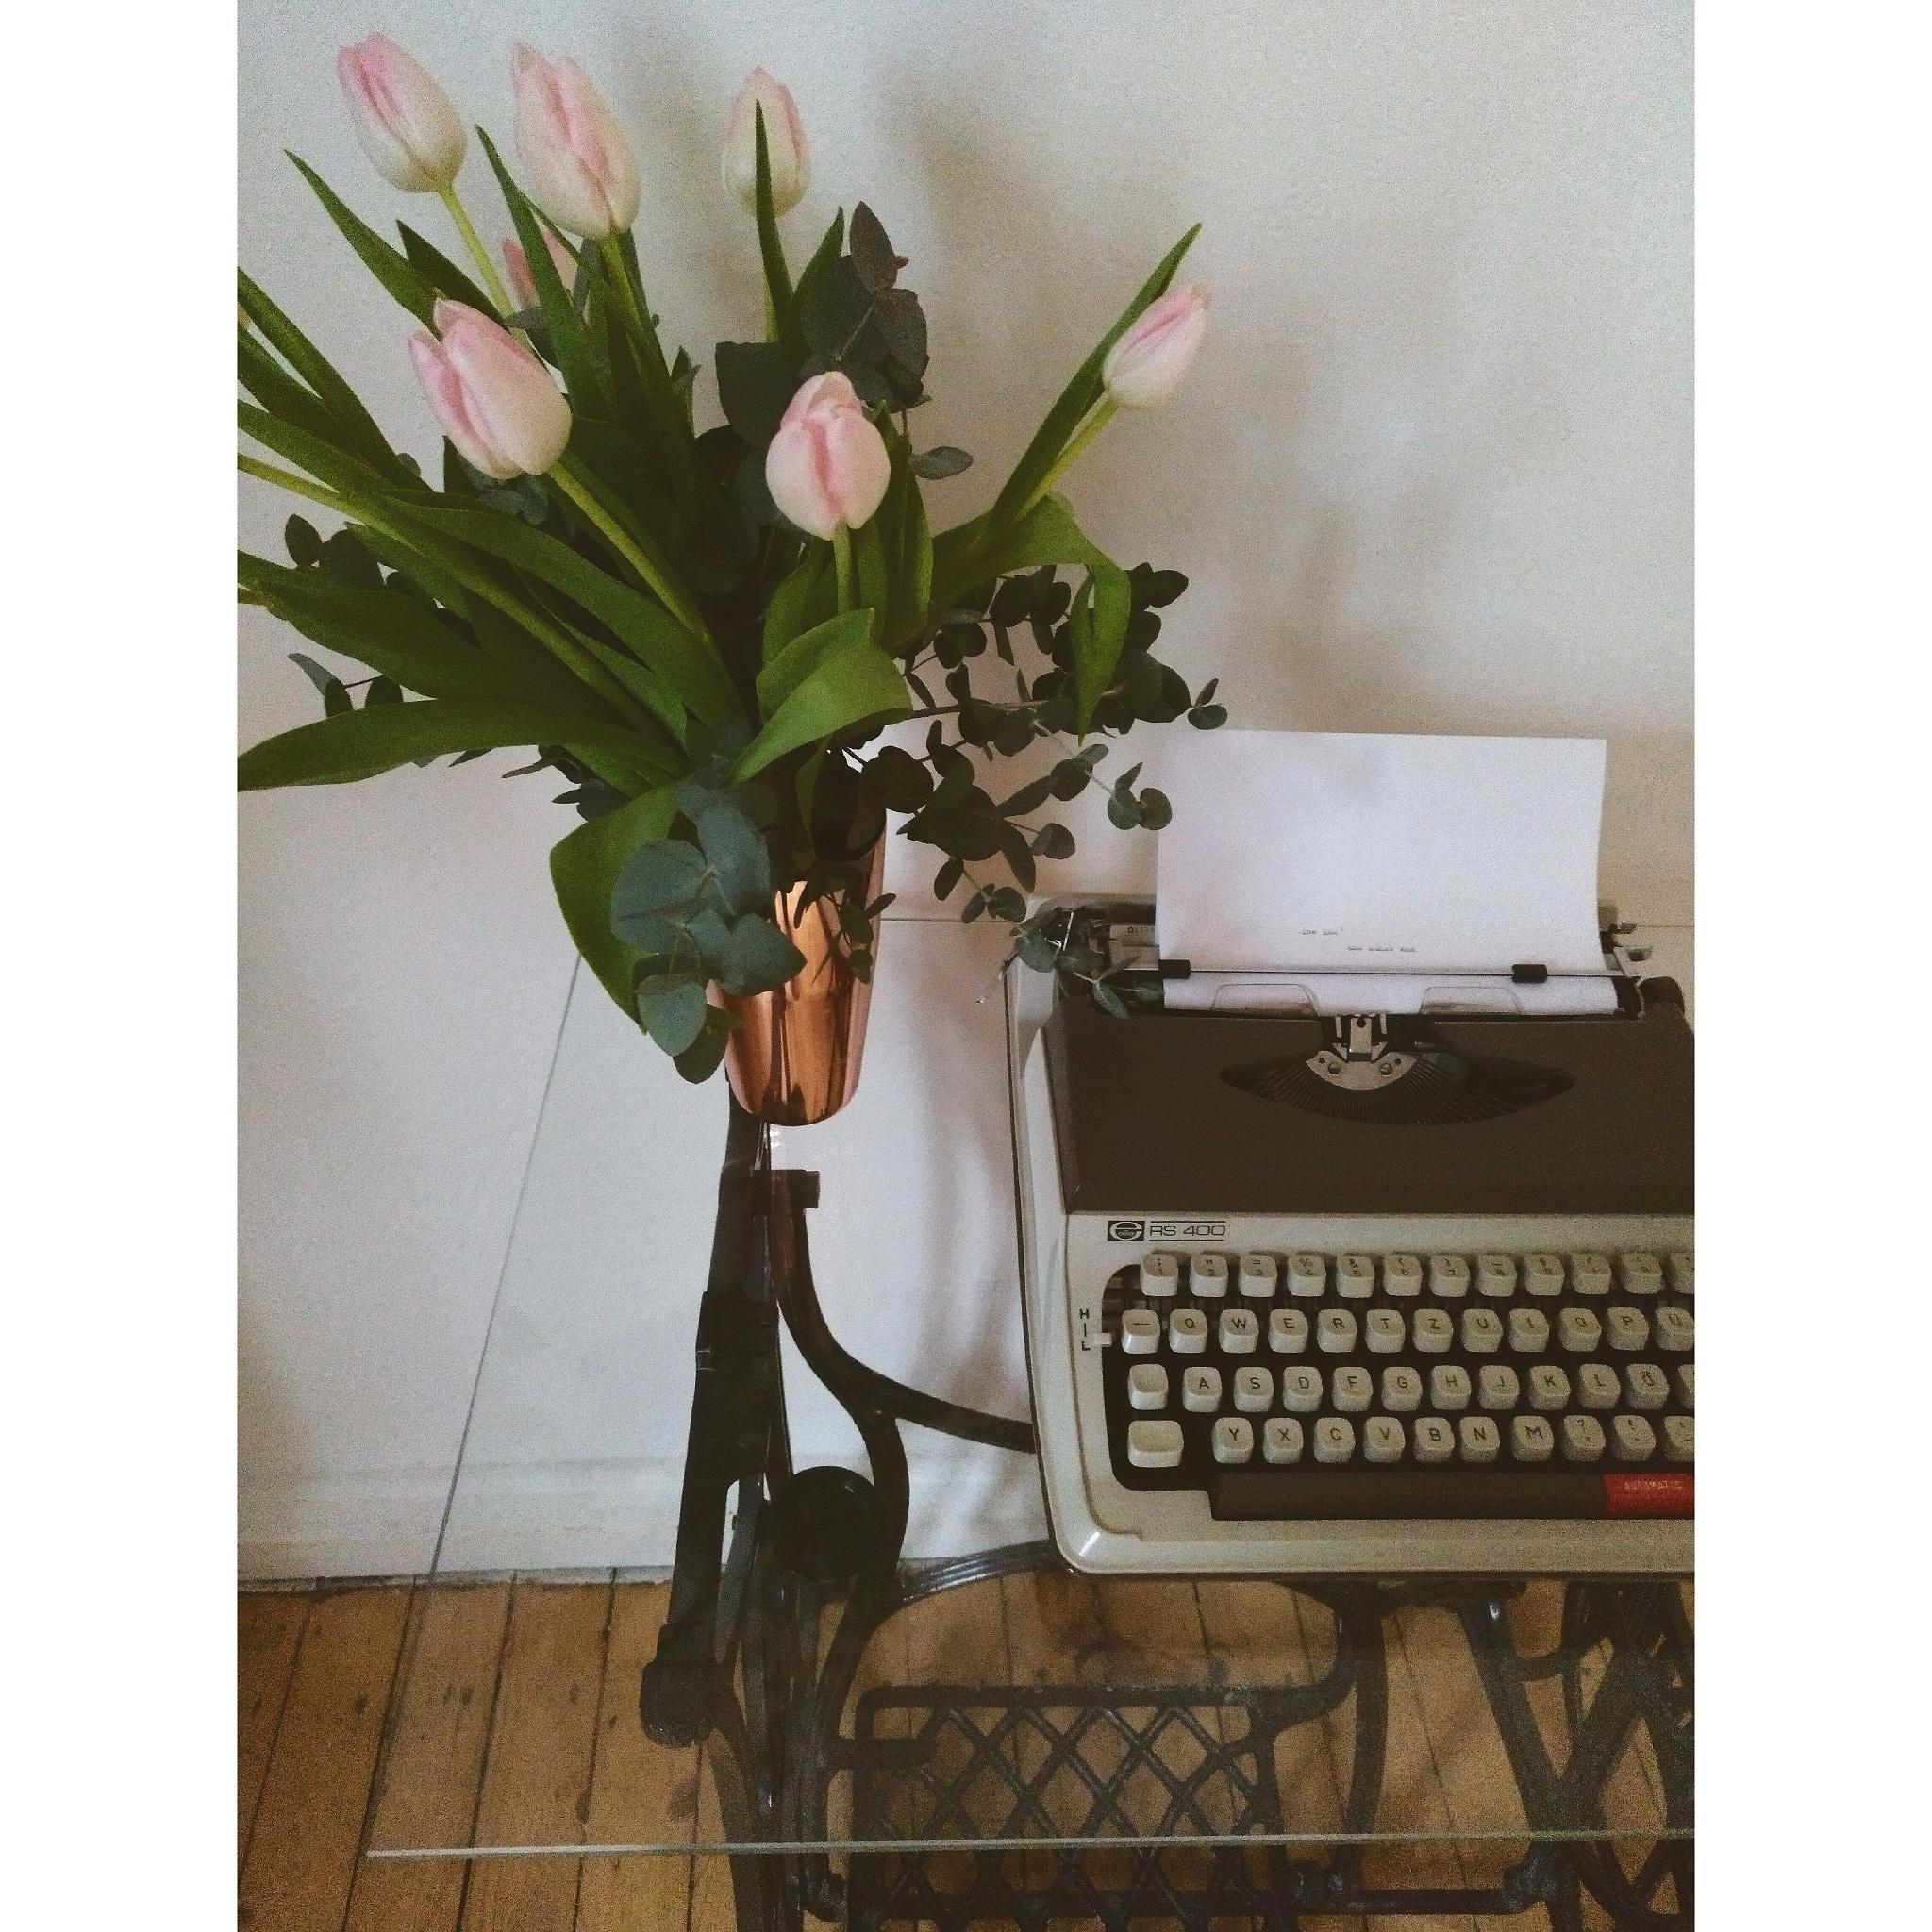 Zeit für Frühling.
#tulpen #blumen #interior #vintage #wohnzimmer #vintagestyle